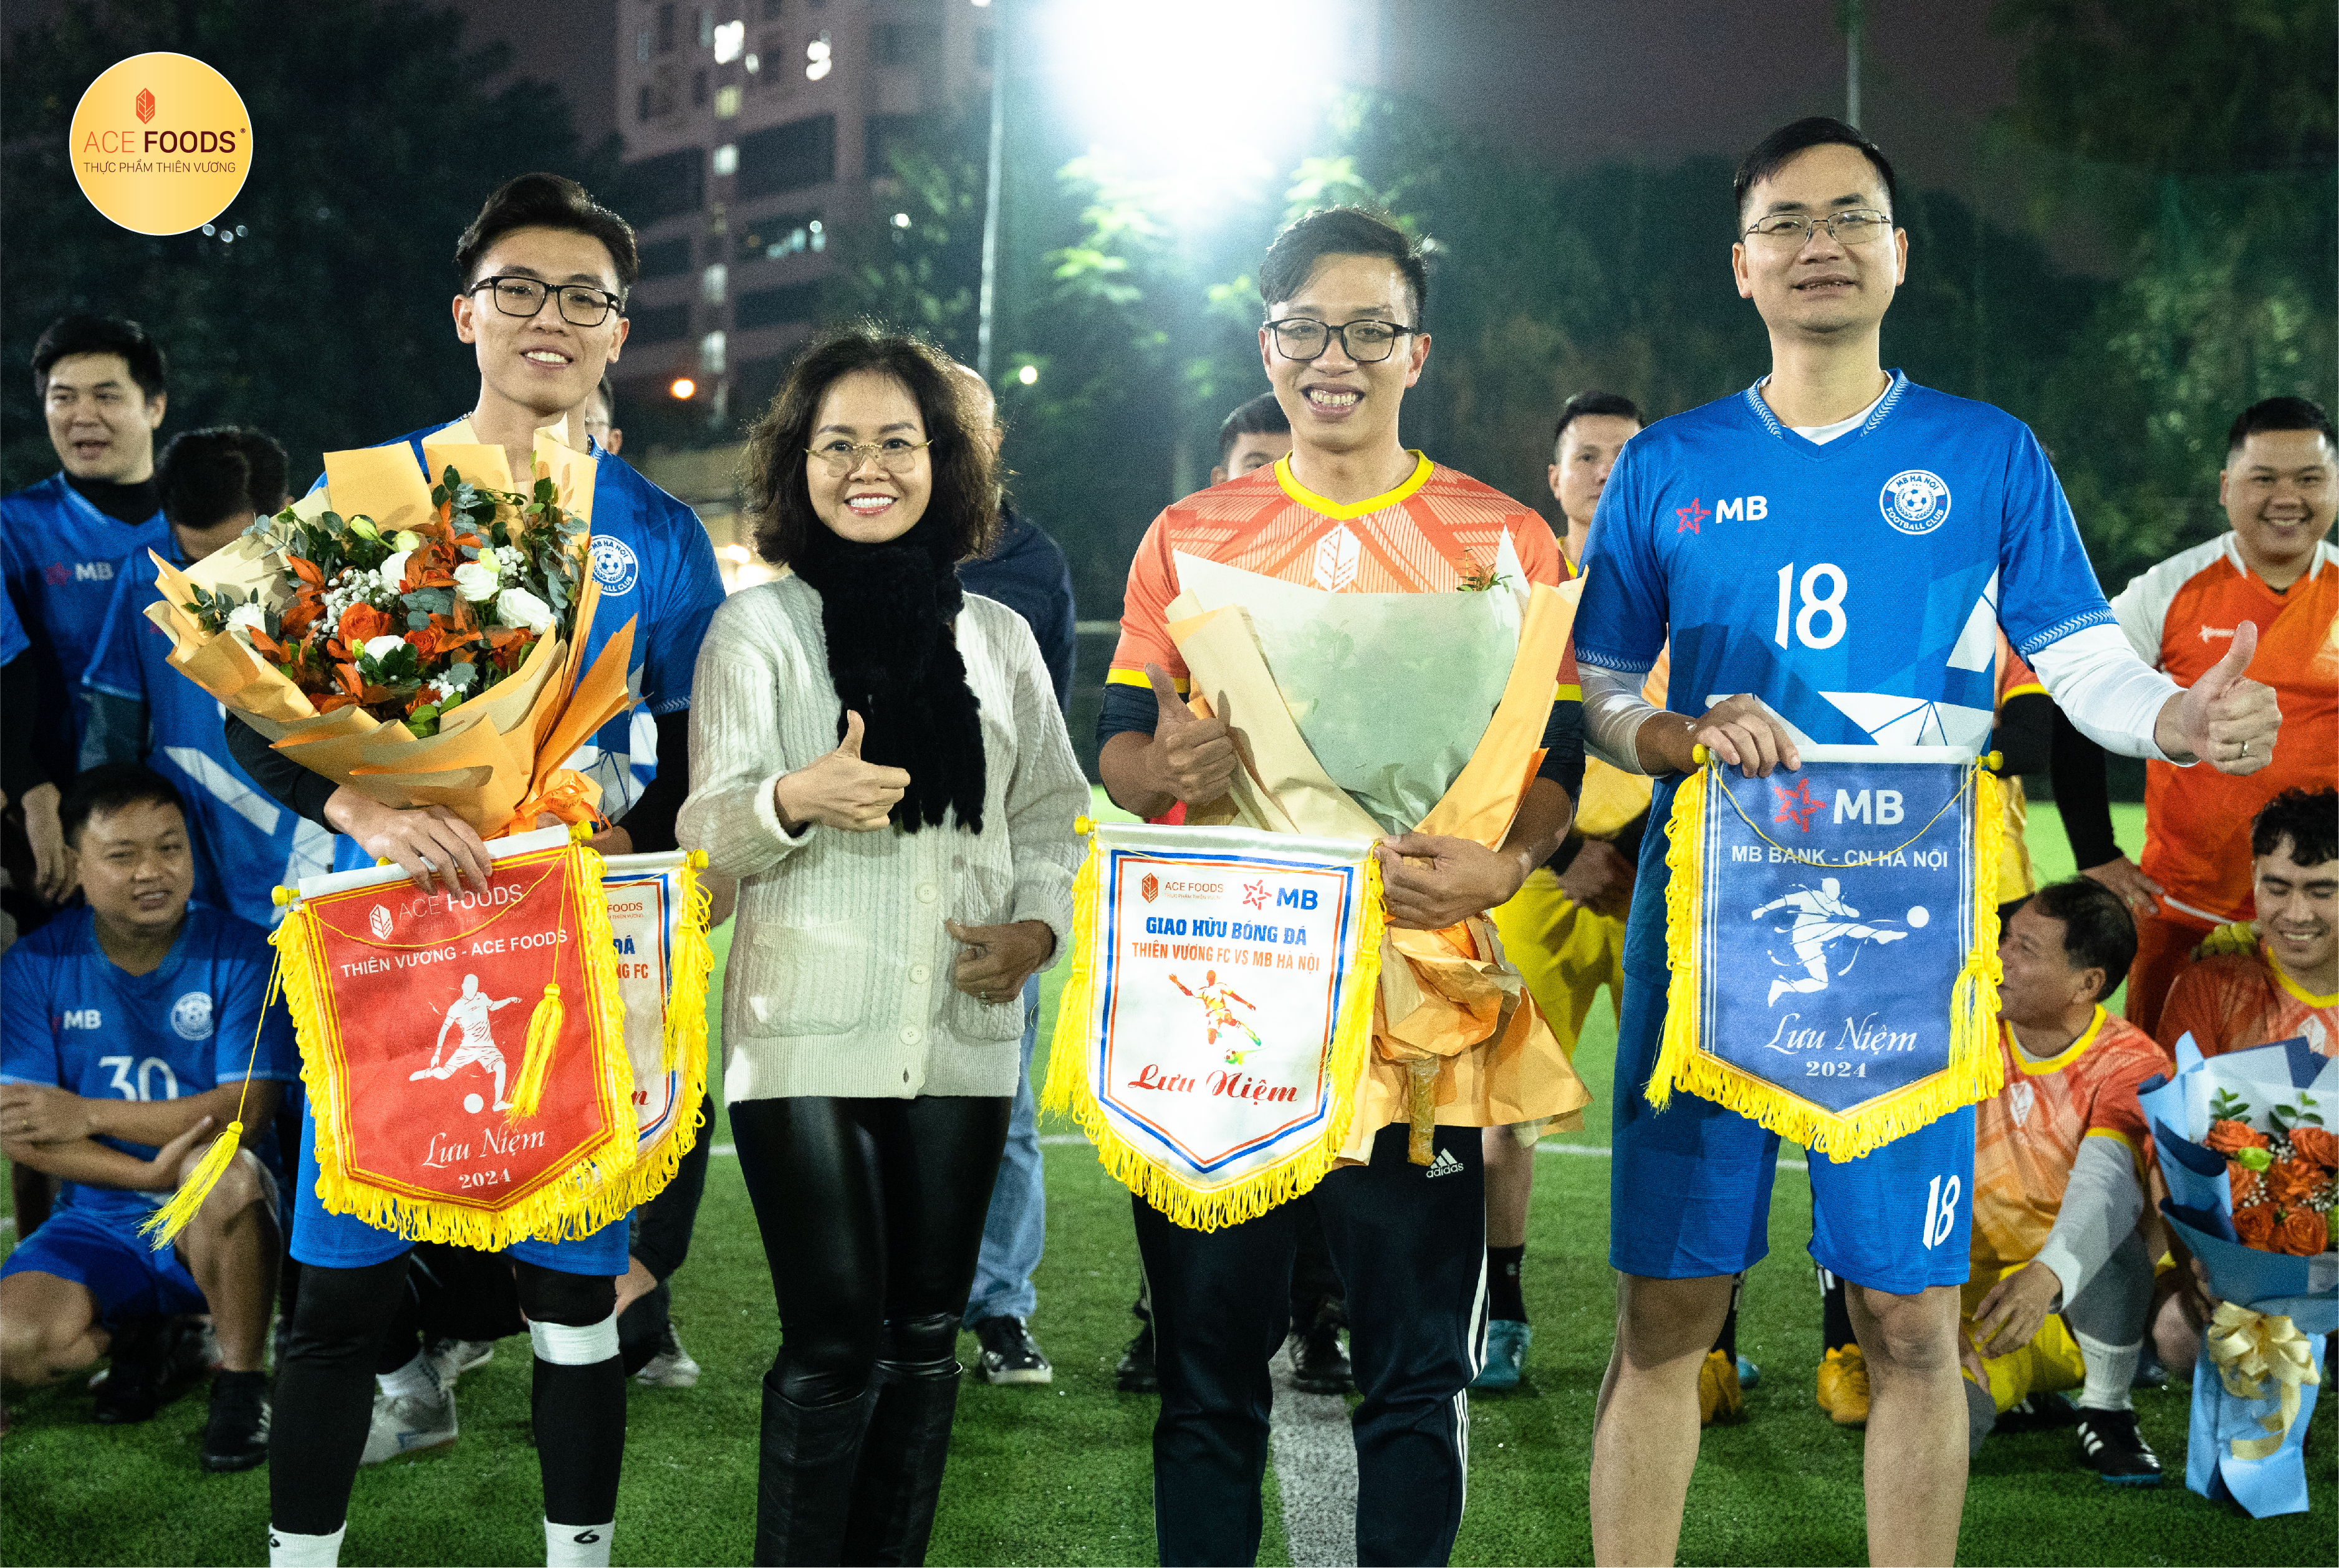 [HOẠT ĐỘNG NỘI BỘ] Giao hữu bóng đá nam giữa đội tuyển Thiên Vương ACE FOODS - Ngân hàng MB chi nhánh Hà Nội.